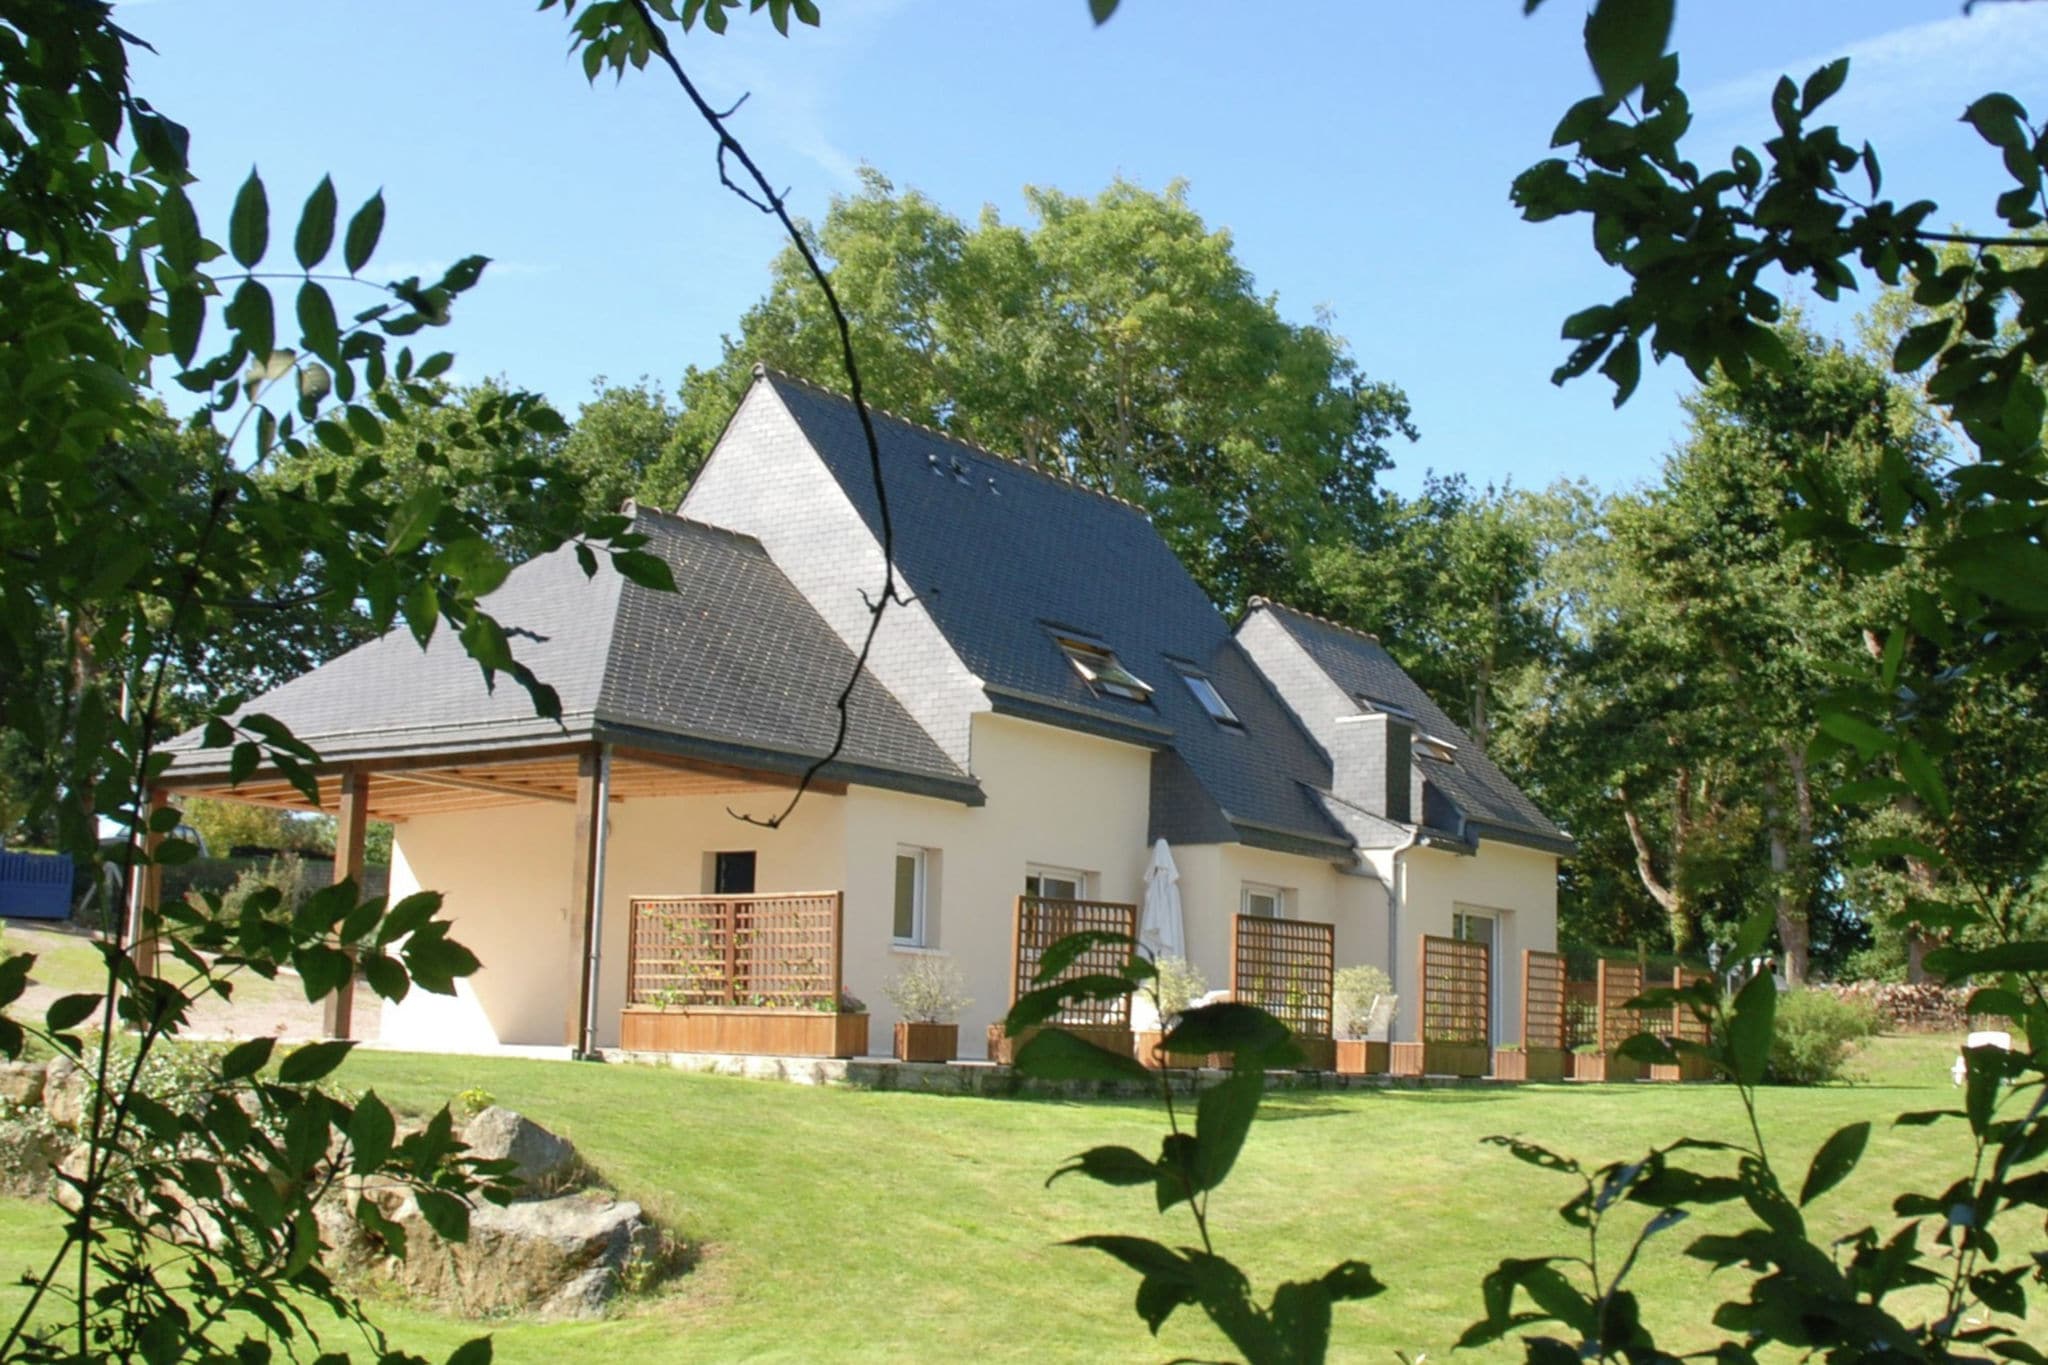 Mooi, vrijstaand vakantiehuis met riante tuin in Bretagne 1 km van het strand